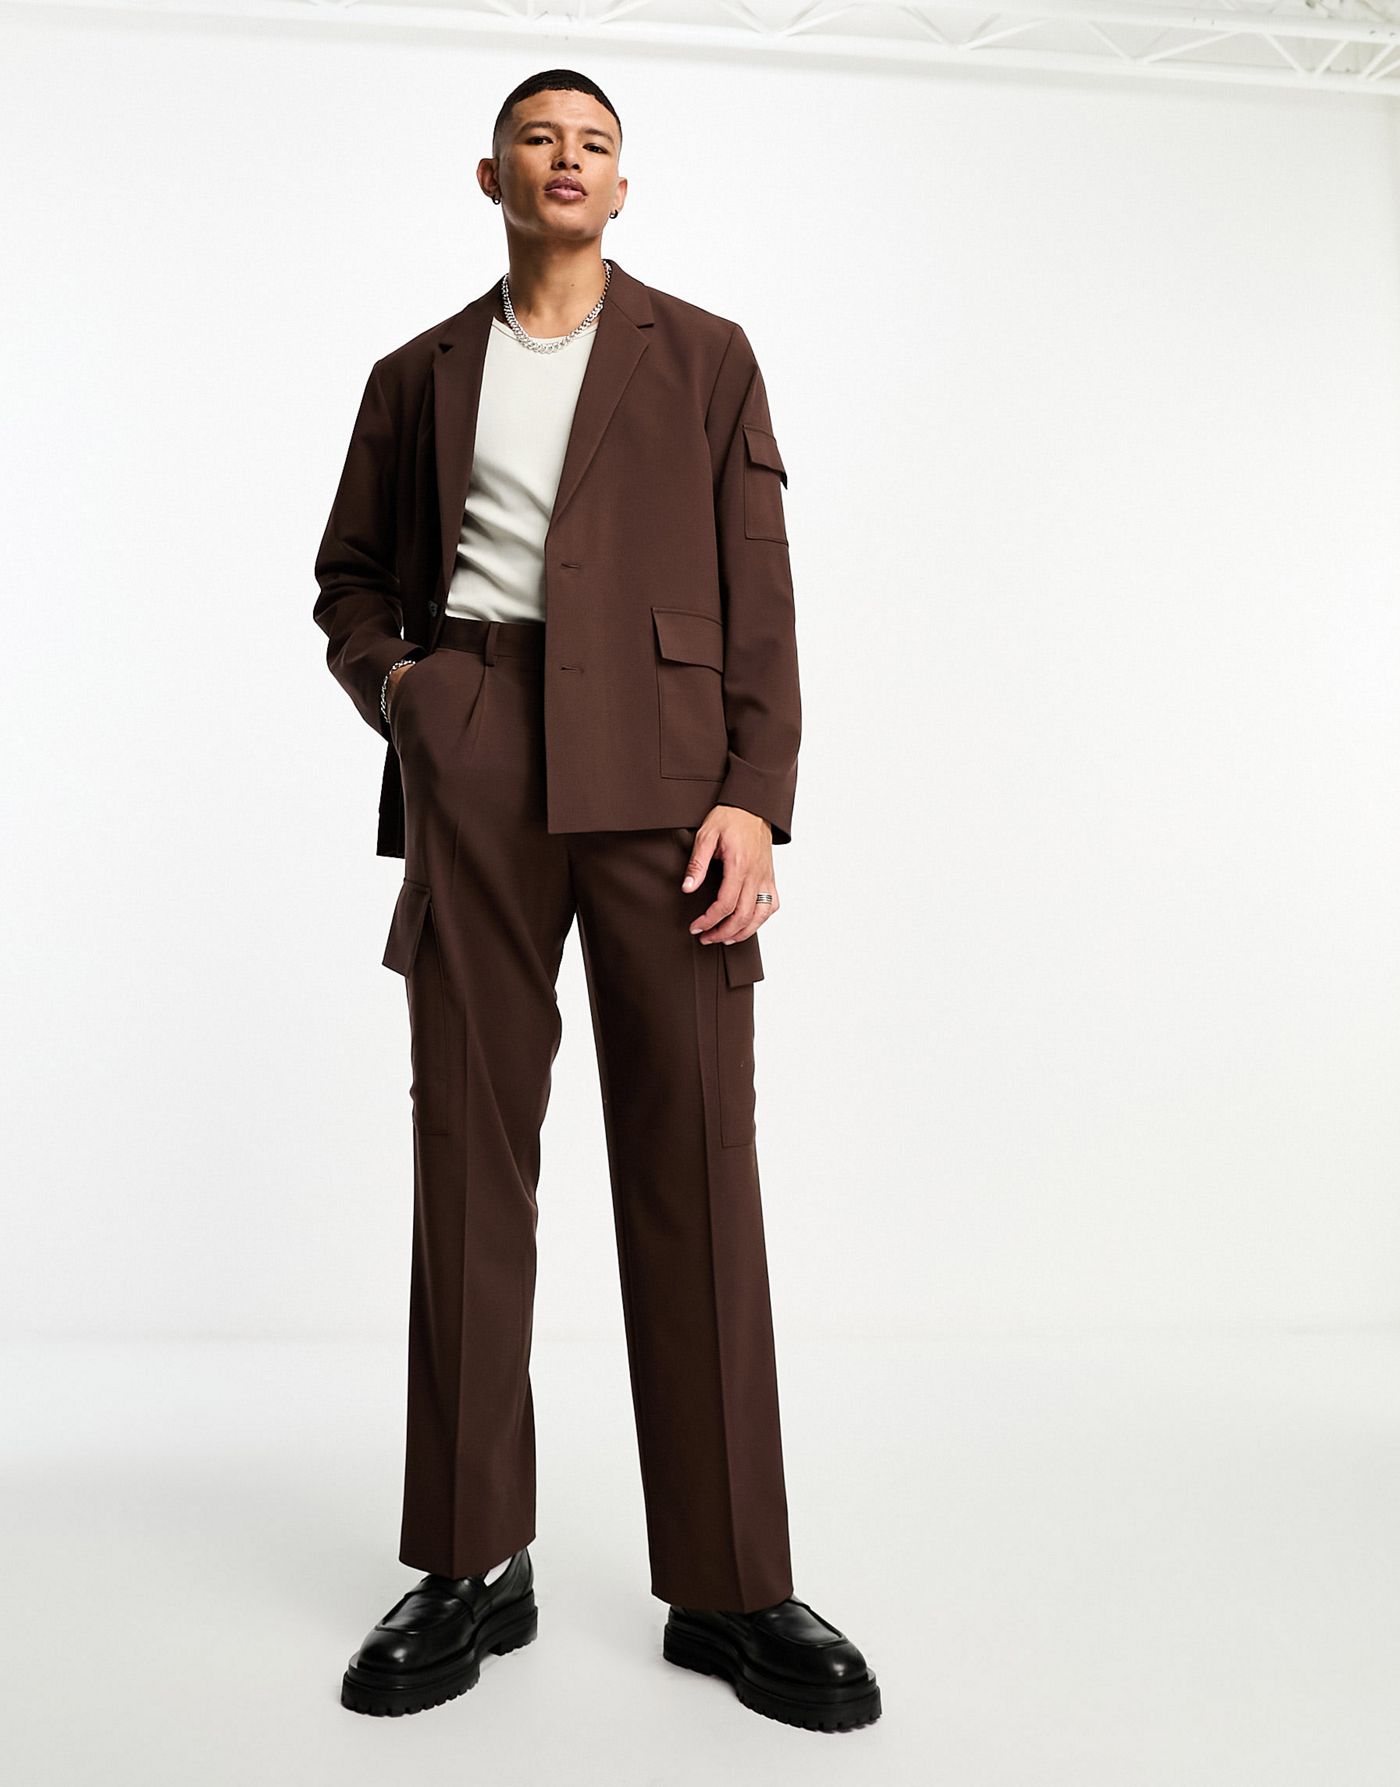 ASOS DESIGN oversized suit jacket in dark brown